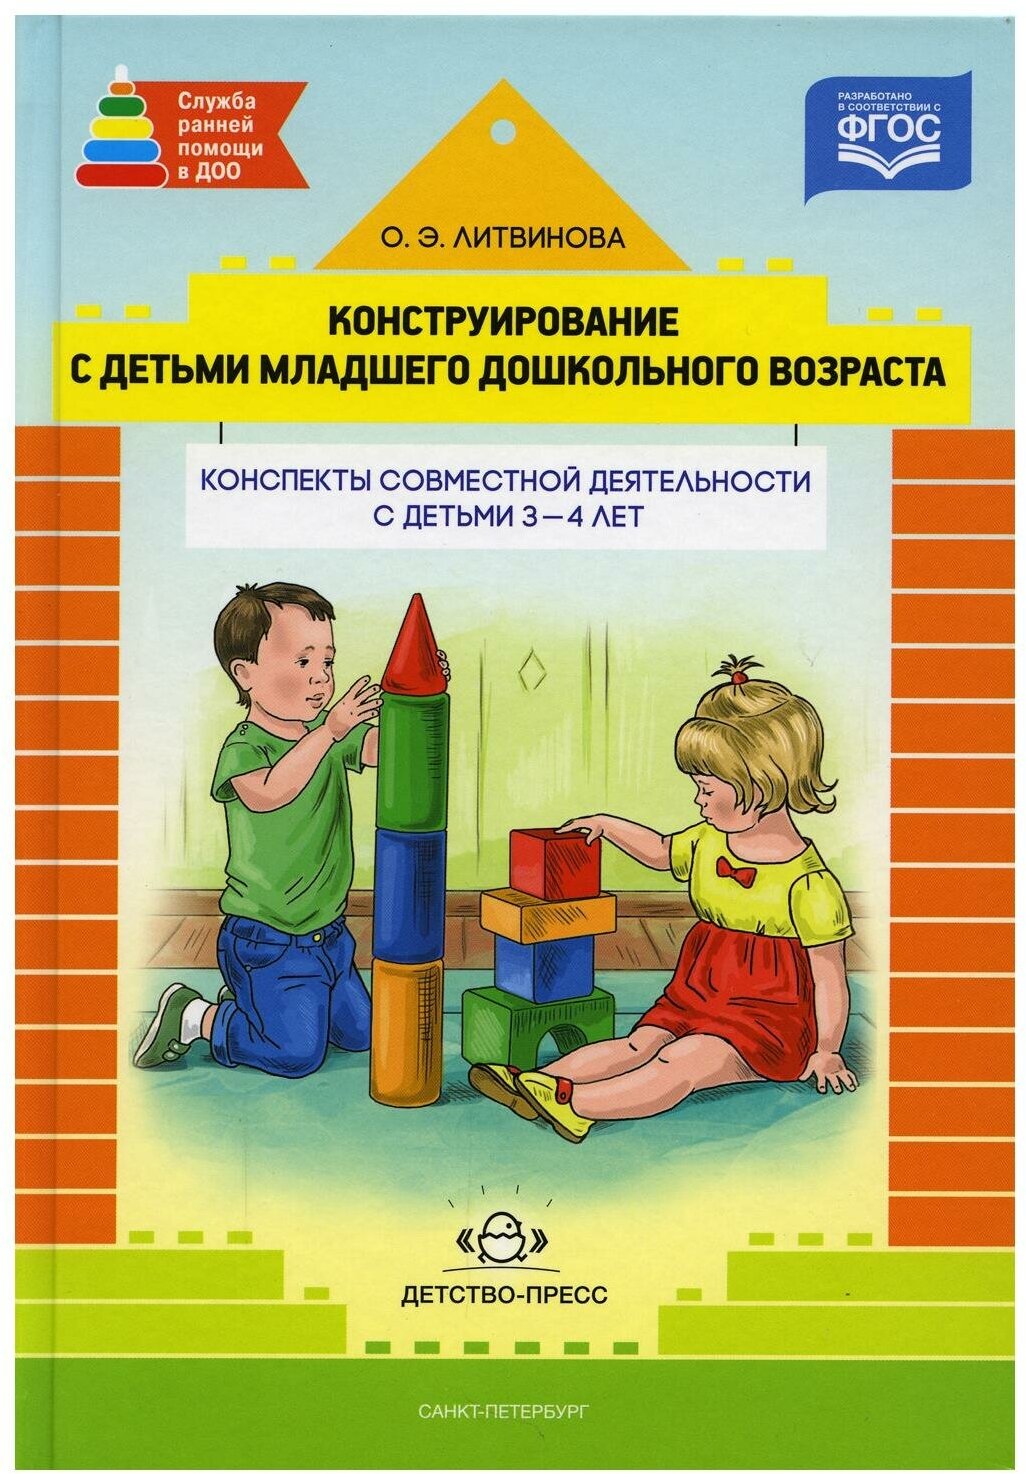 Конструирование с детьми младшего дошкольного возраста конспекты совместной деятельности с детьми 3-4 лет Методика Литвинова ОЭ 0+